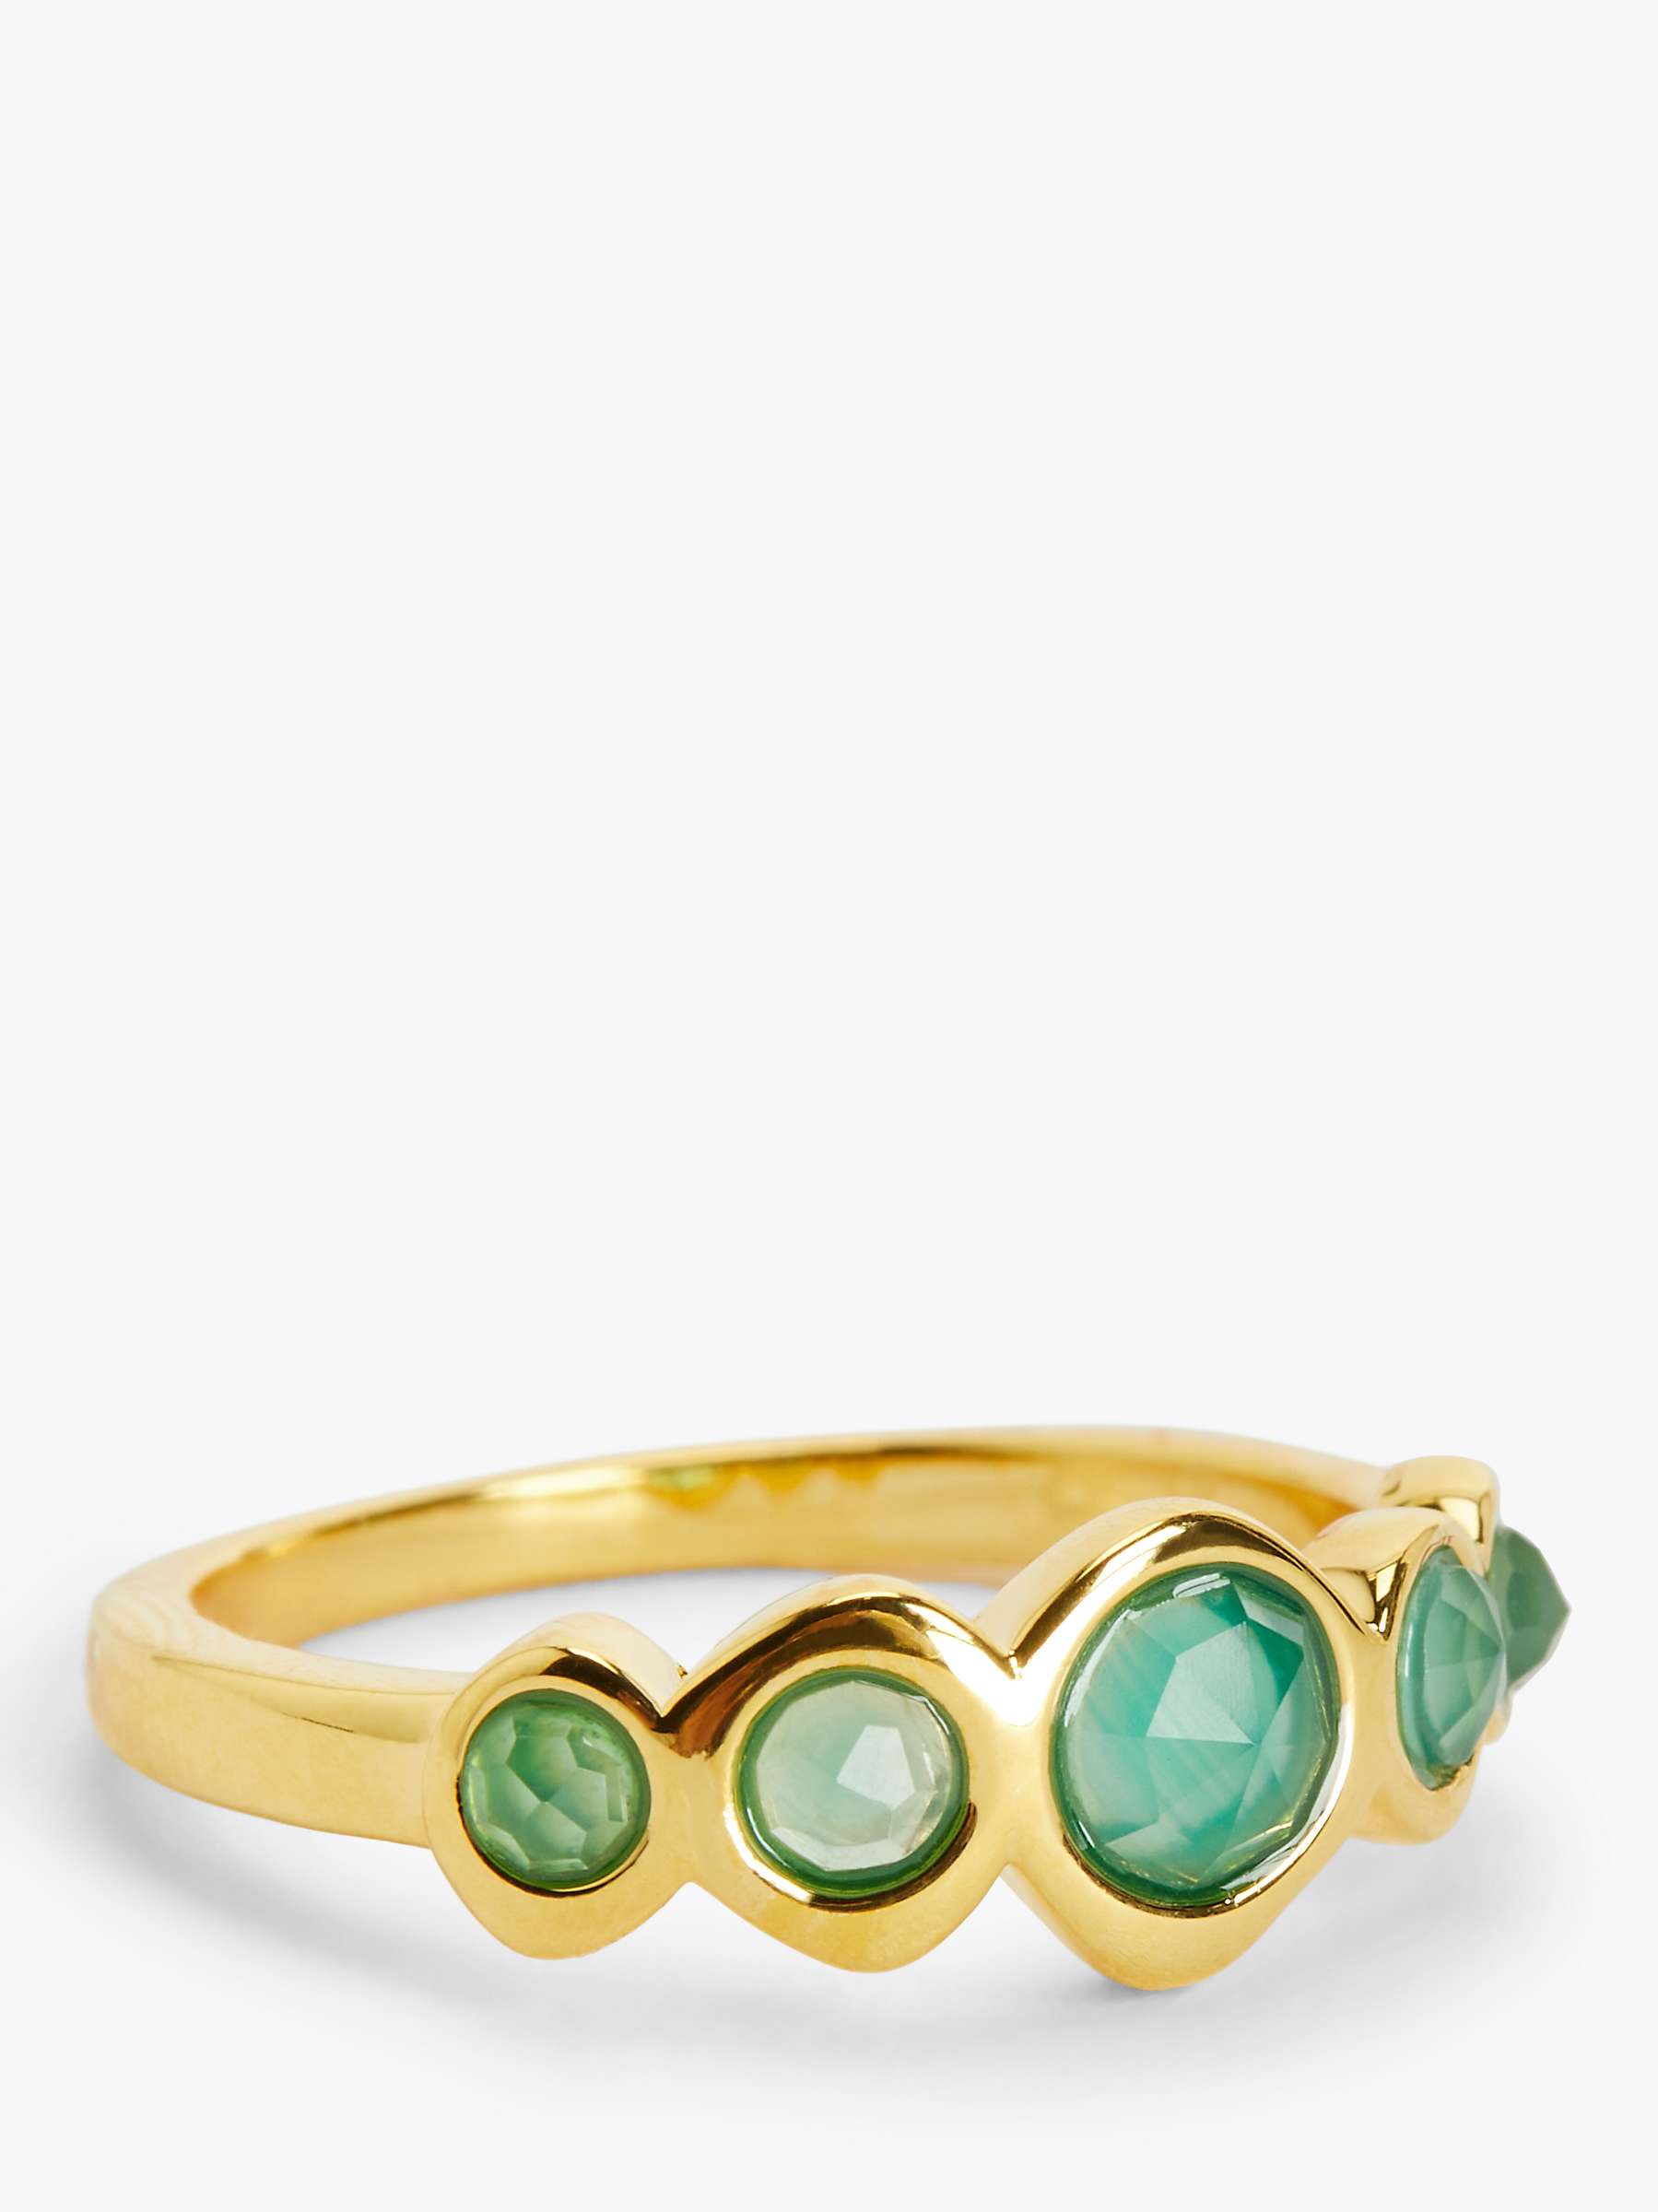 Buy John Lewis Gemstones 5 Stone Ring, Gold/Green Agate Online at johnlewis.com